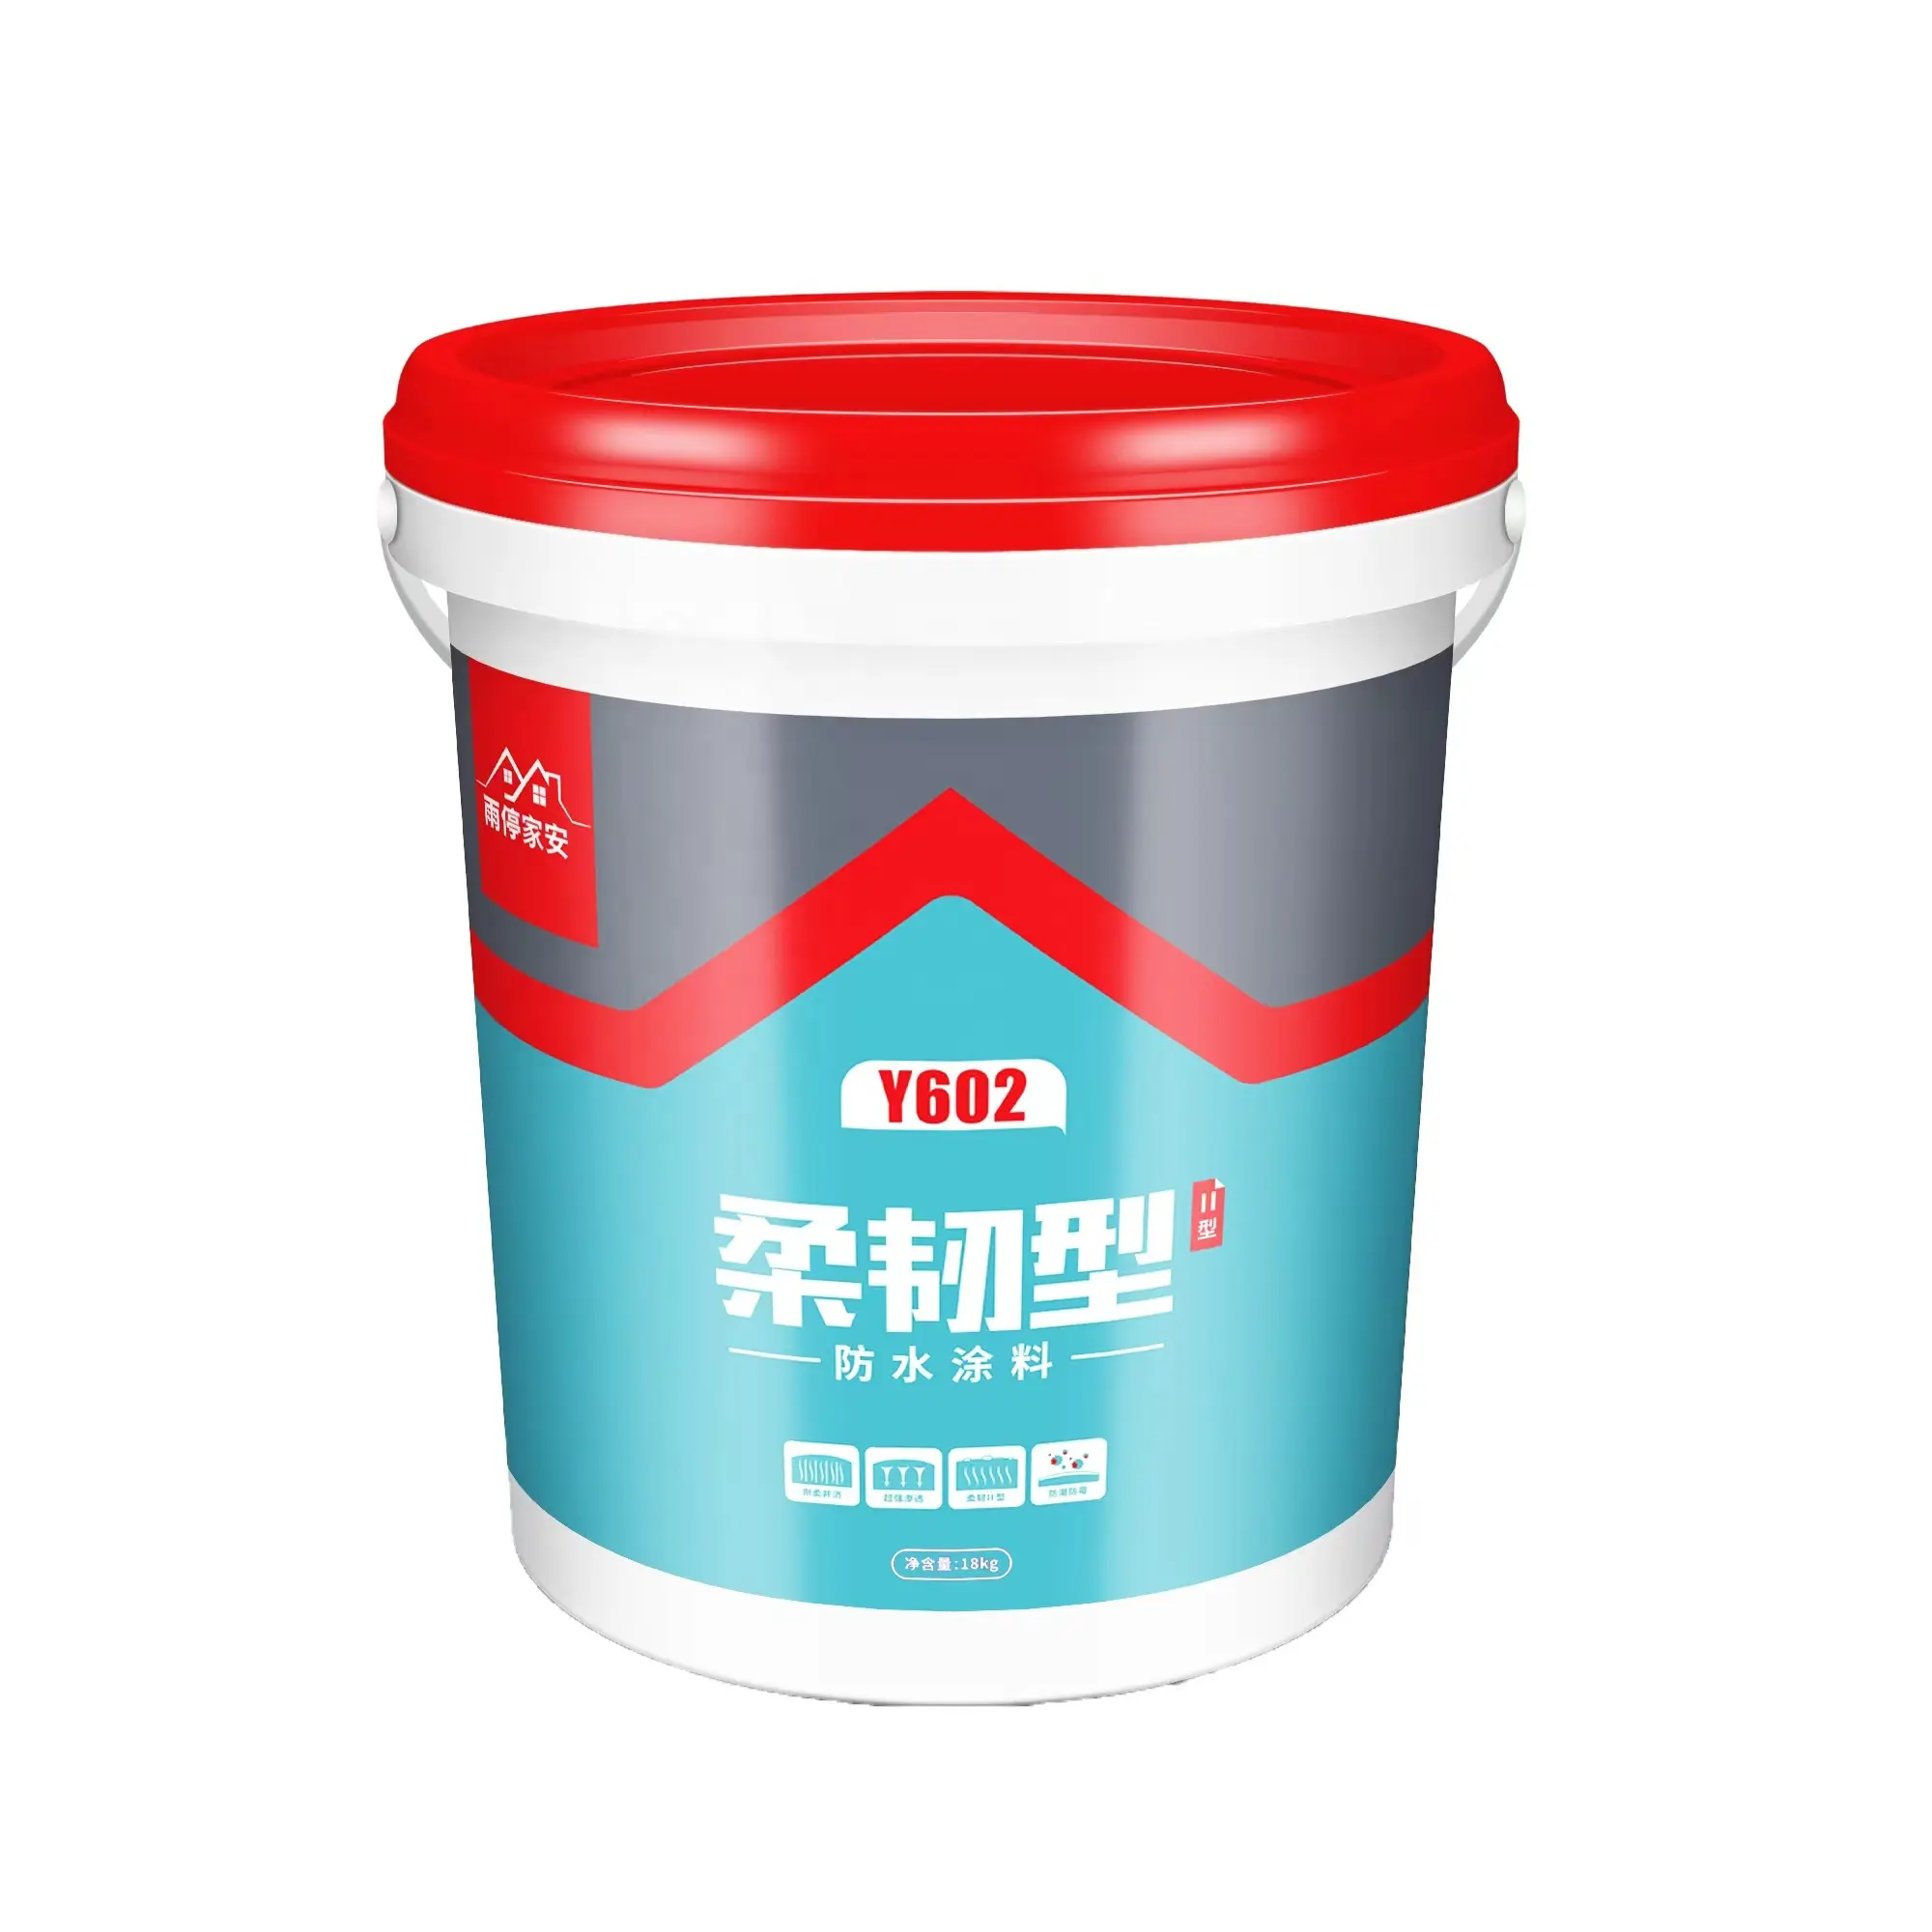 Revestimiento impermeable de poliuretano, fabricado en China, membrana líquida de pu